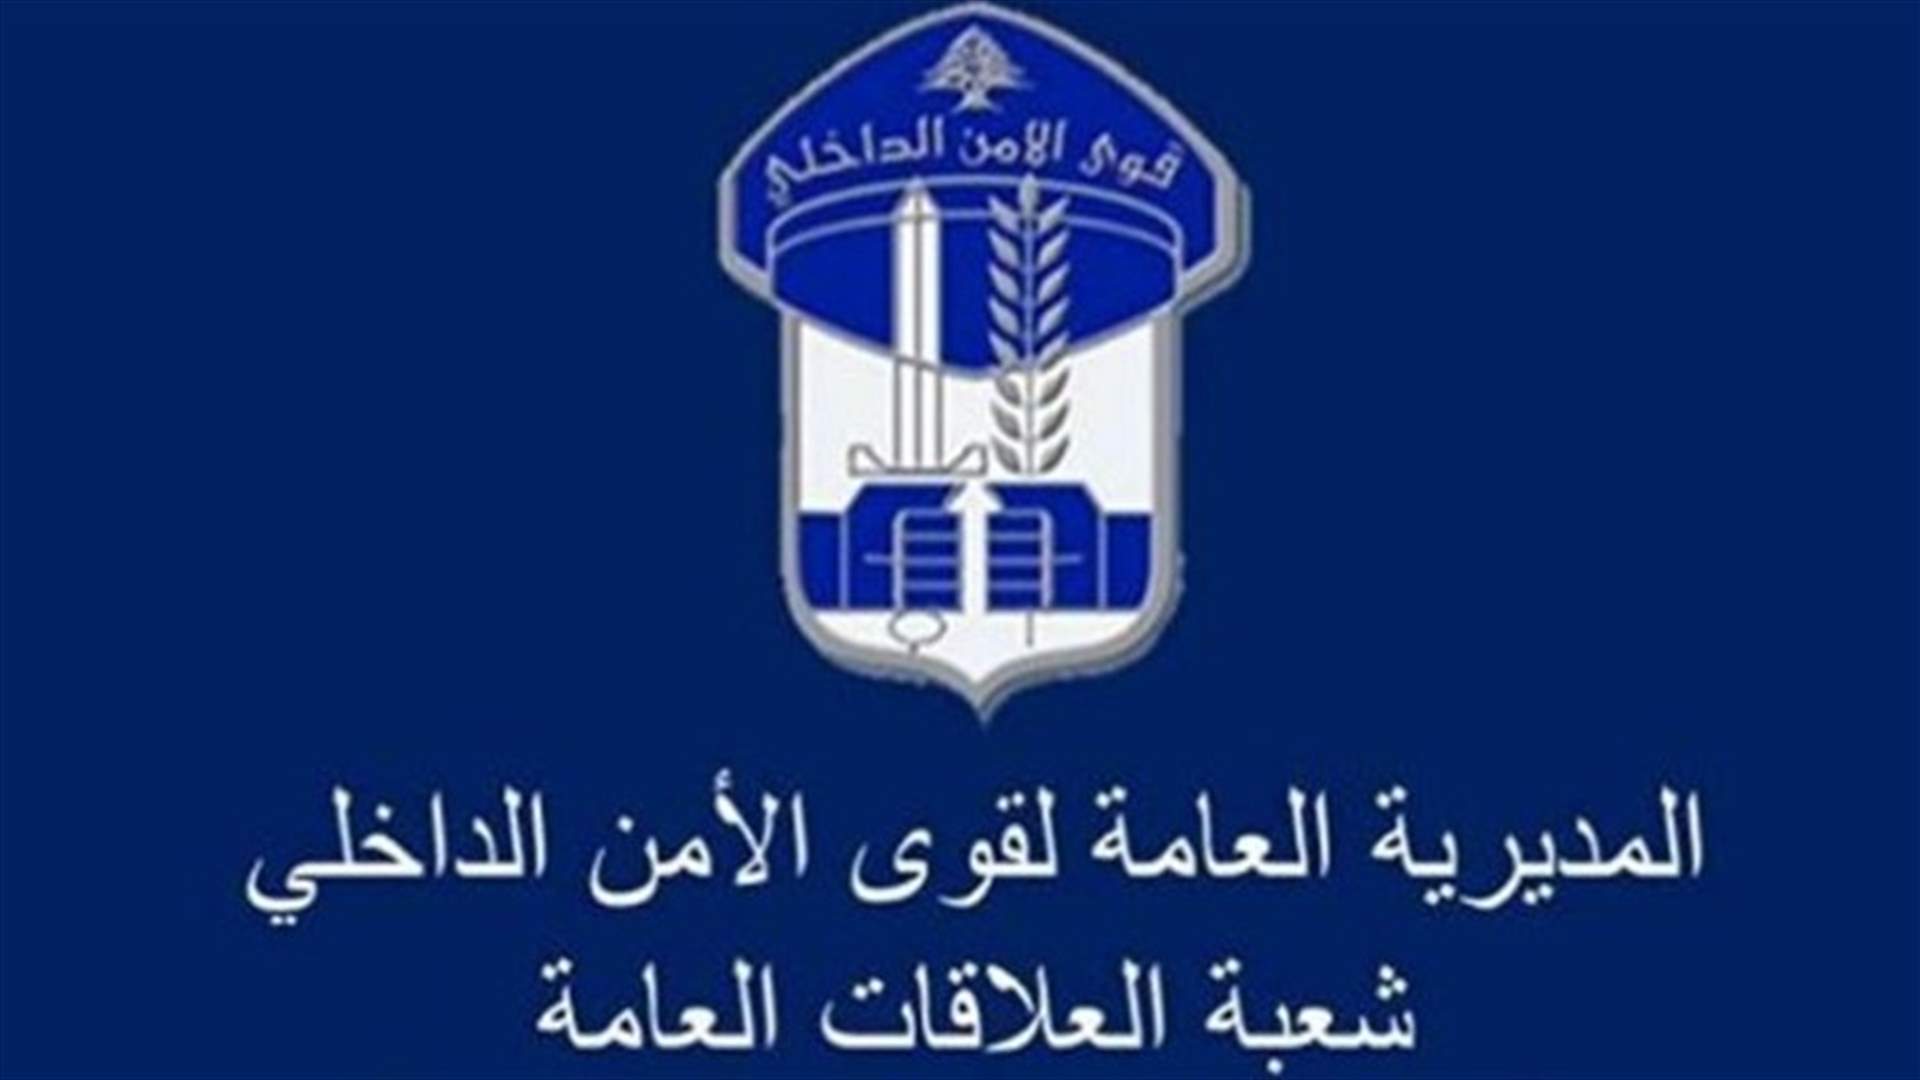 توقيف 3 اشخاص بجرم سرقة أسلاك لمحطات كهرباء لبنان وبيعها